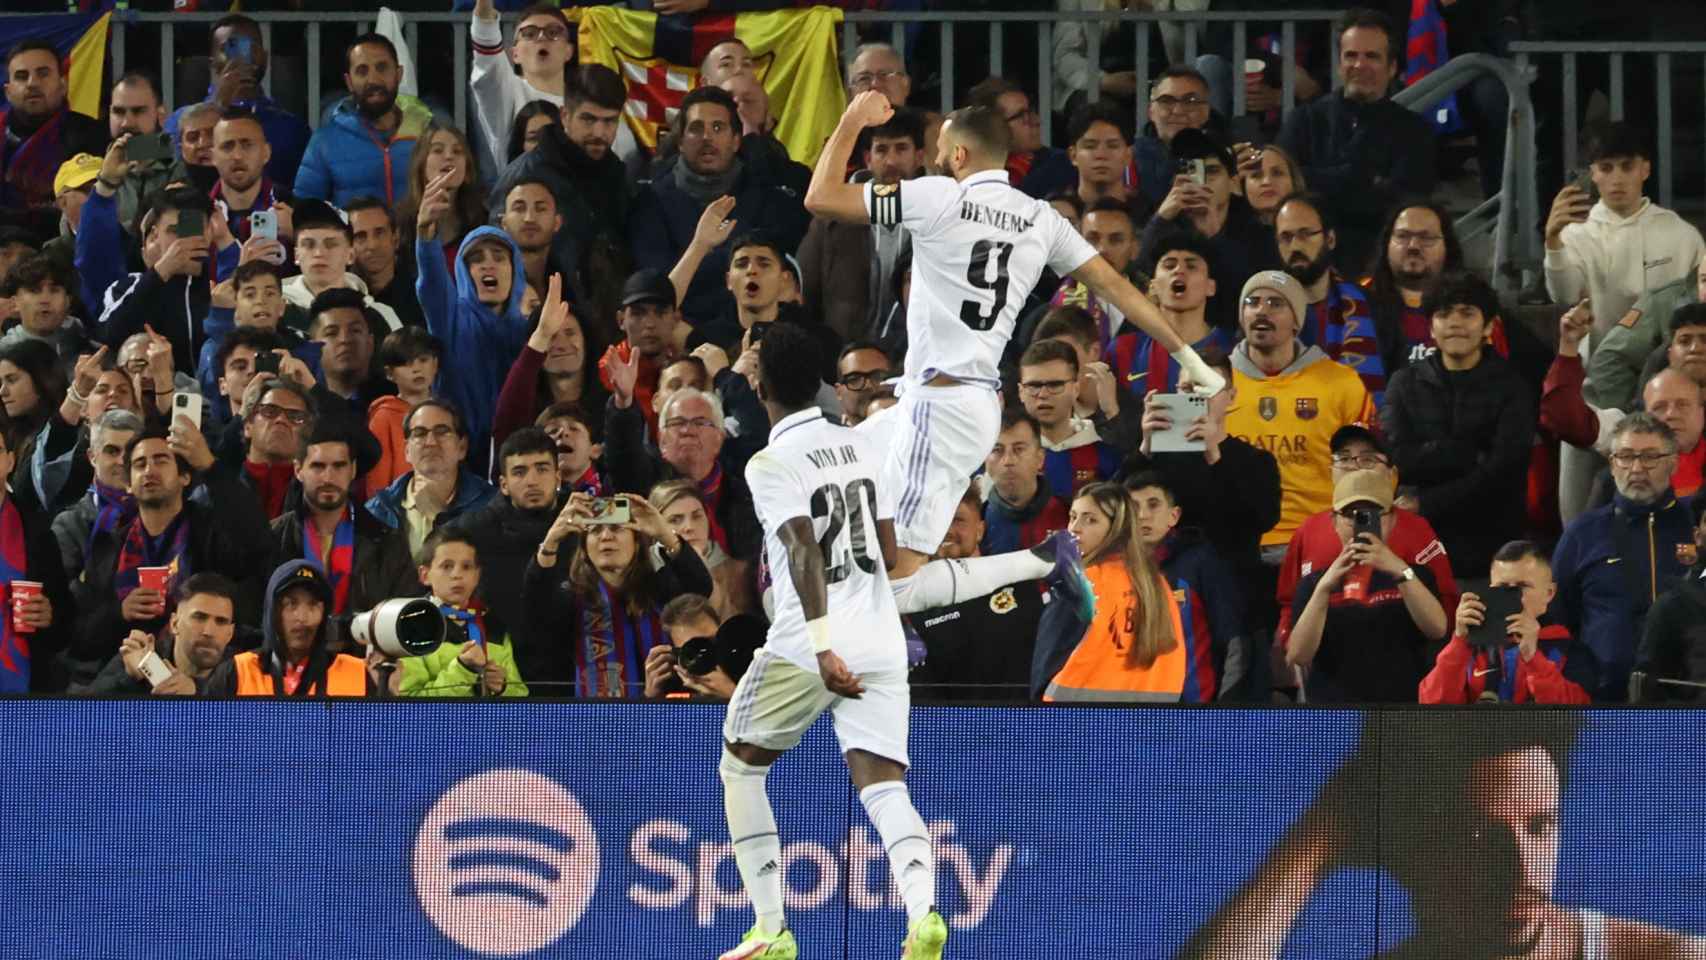 La celebración de Benzema después de uno de sus goles.